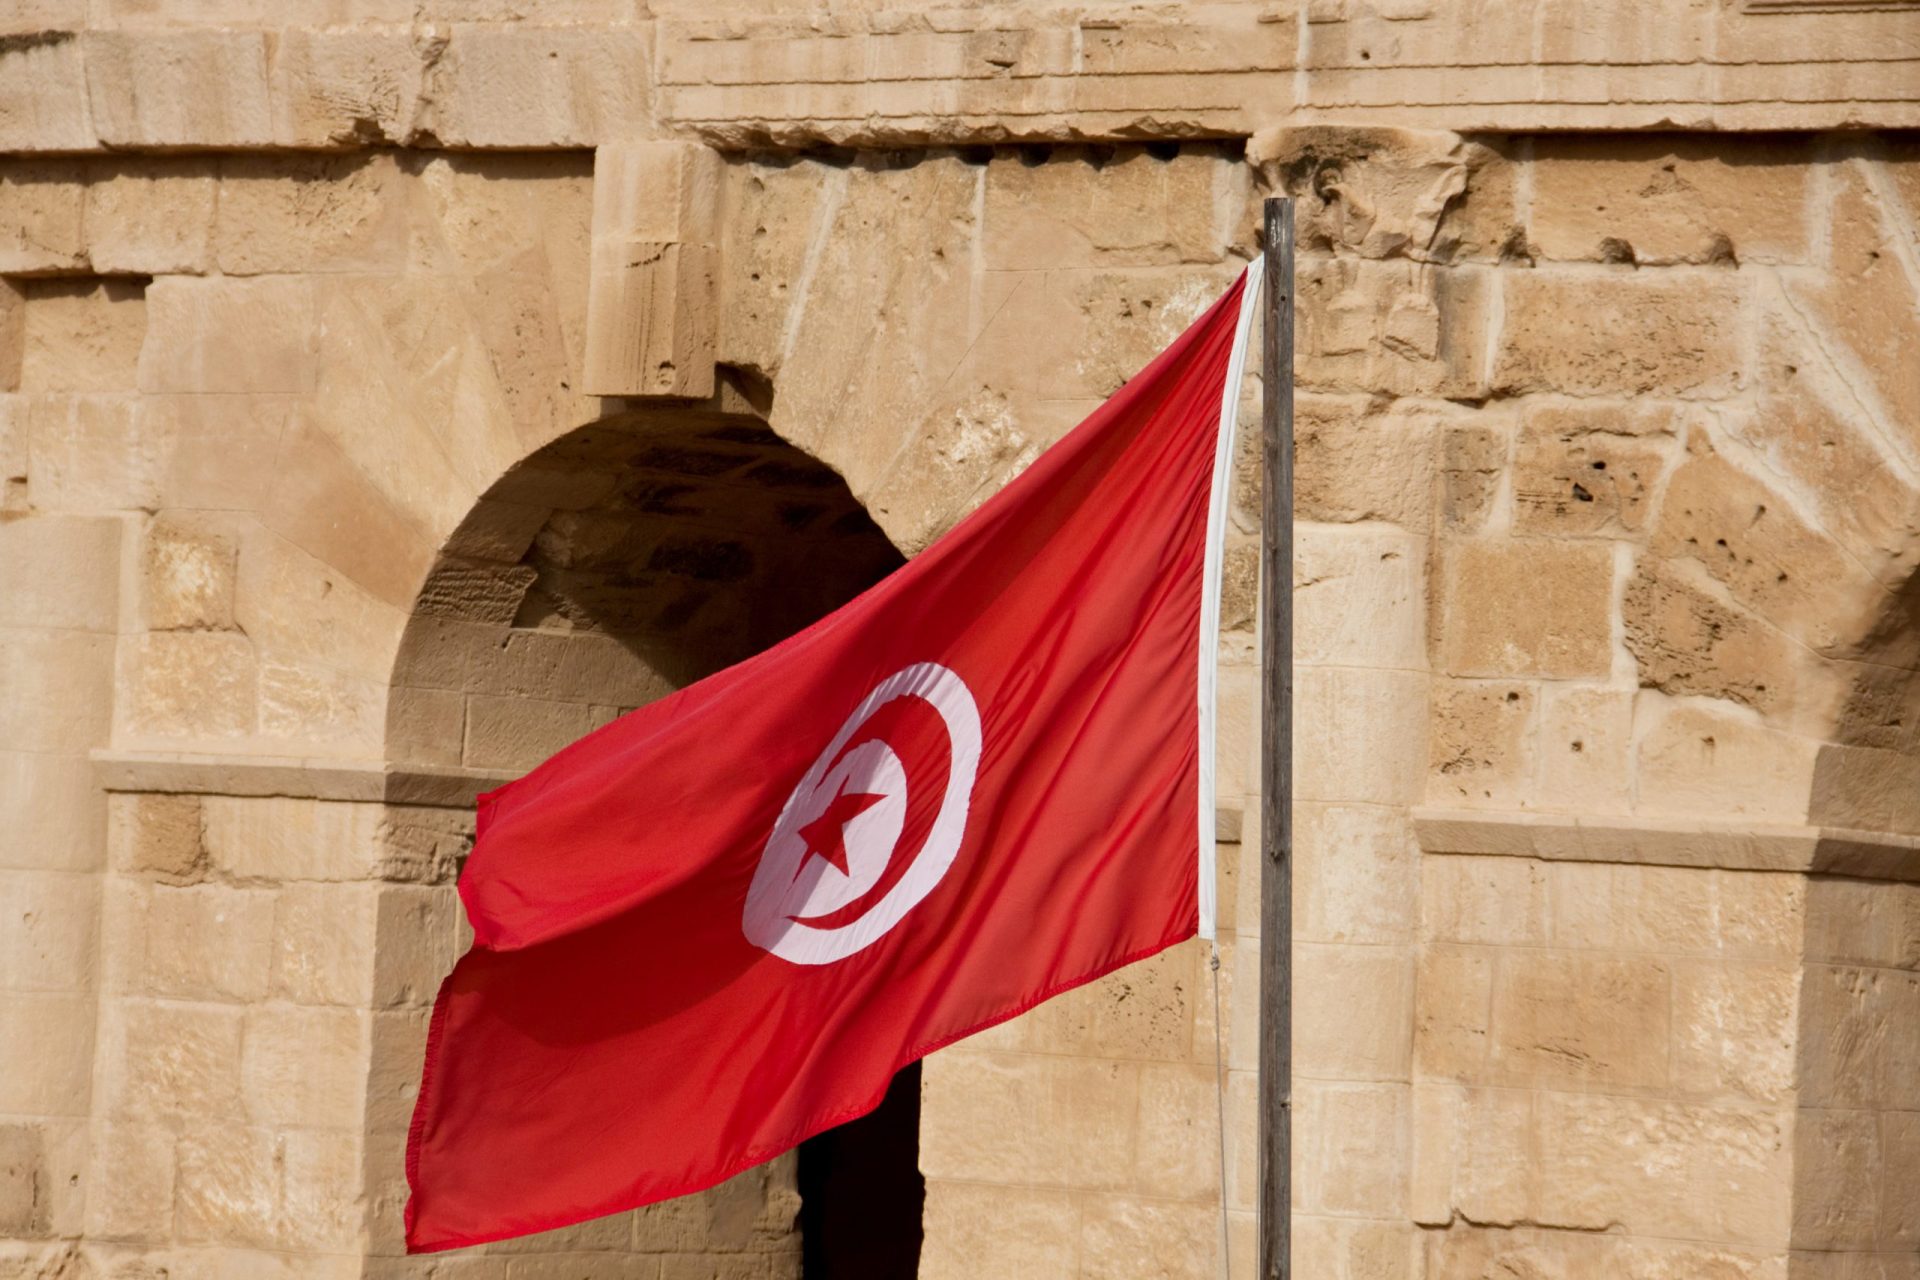 17 mortos em acidente de comboio na Tunísia